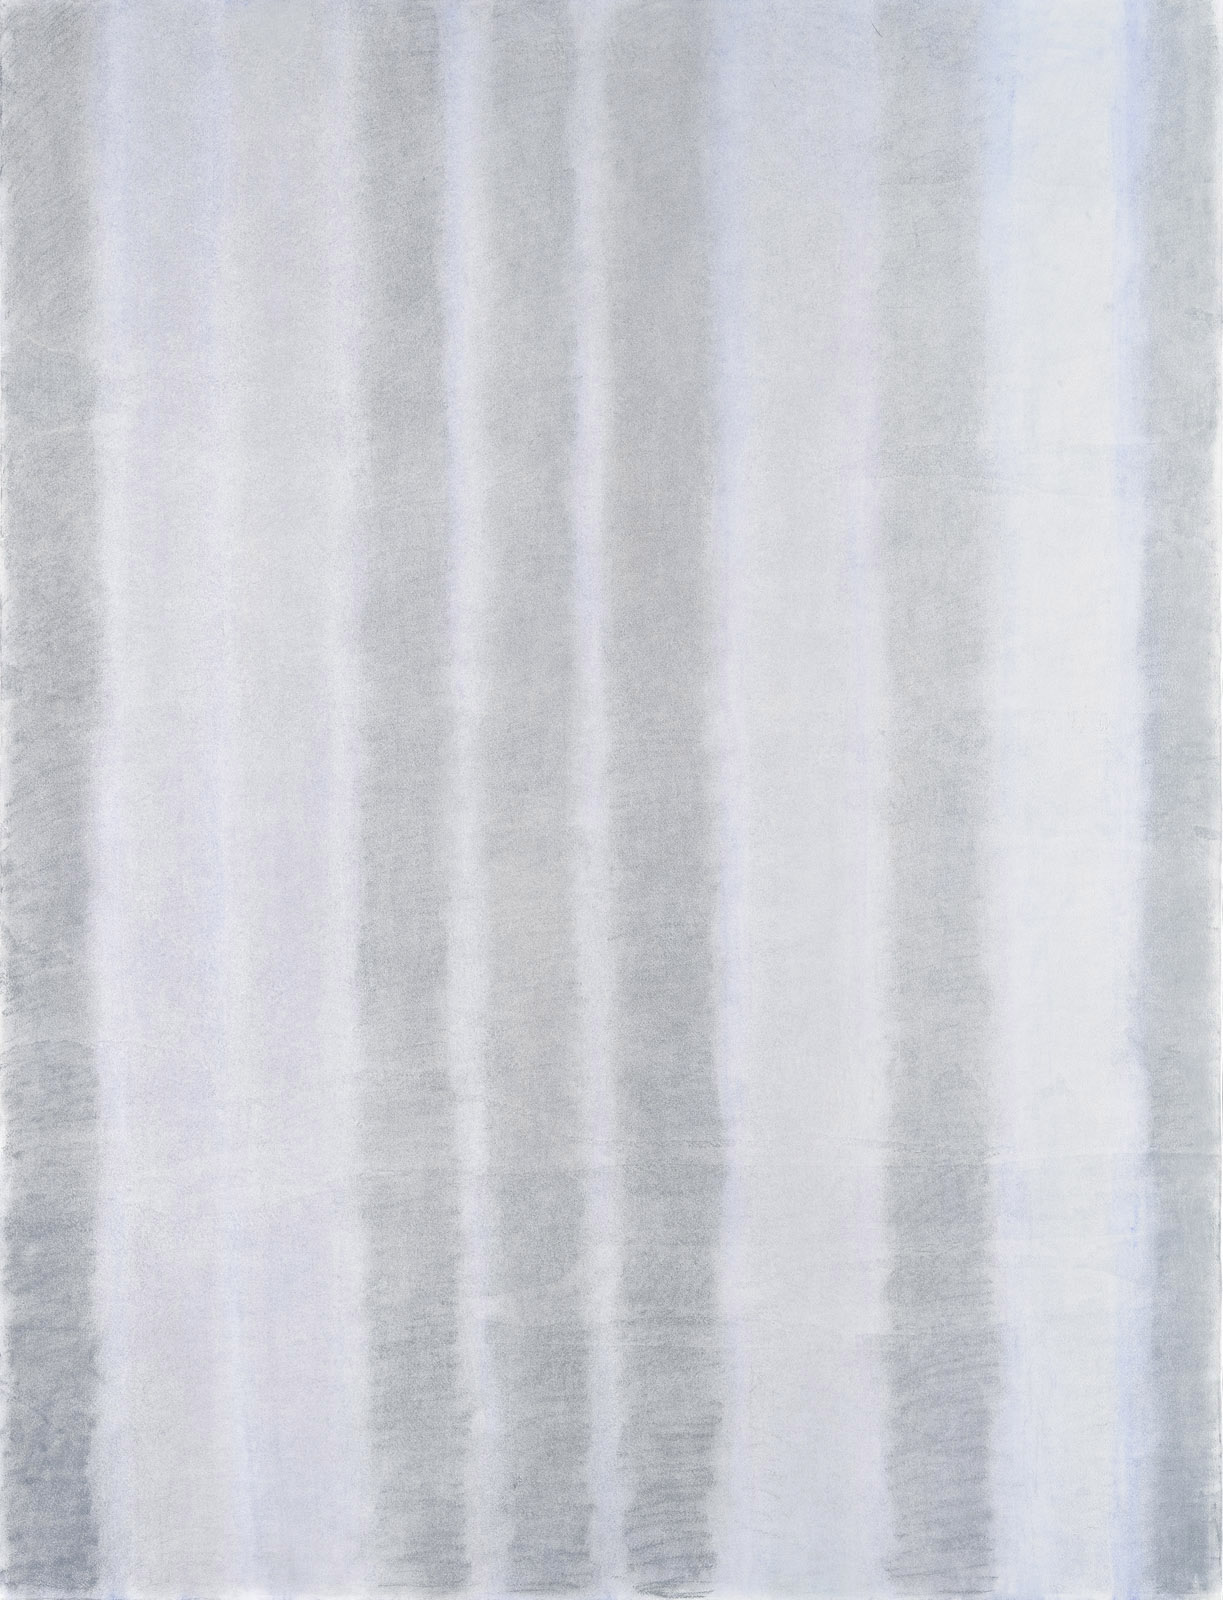  Jitka Svobodová,  Curtains   Cycle ,  VII , 2015, pastel on paper, 170 x 130 cm 